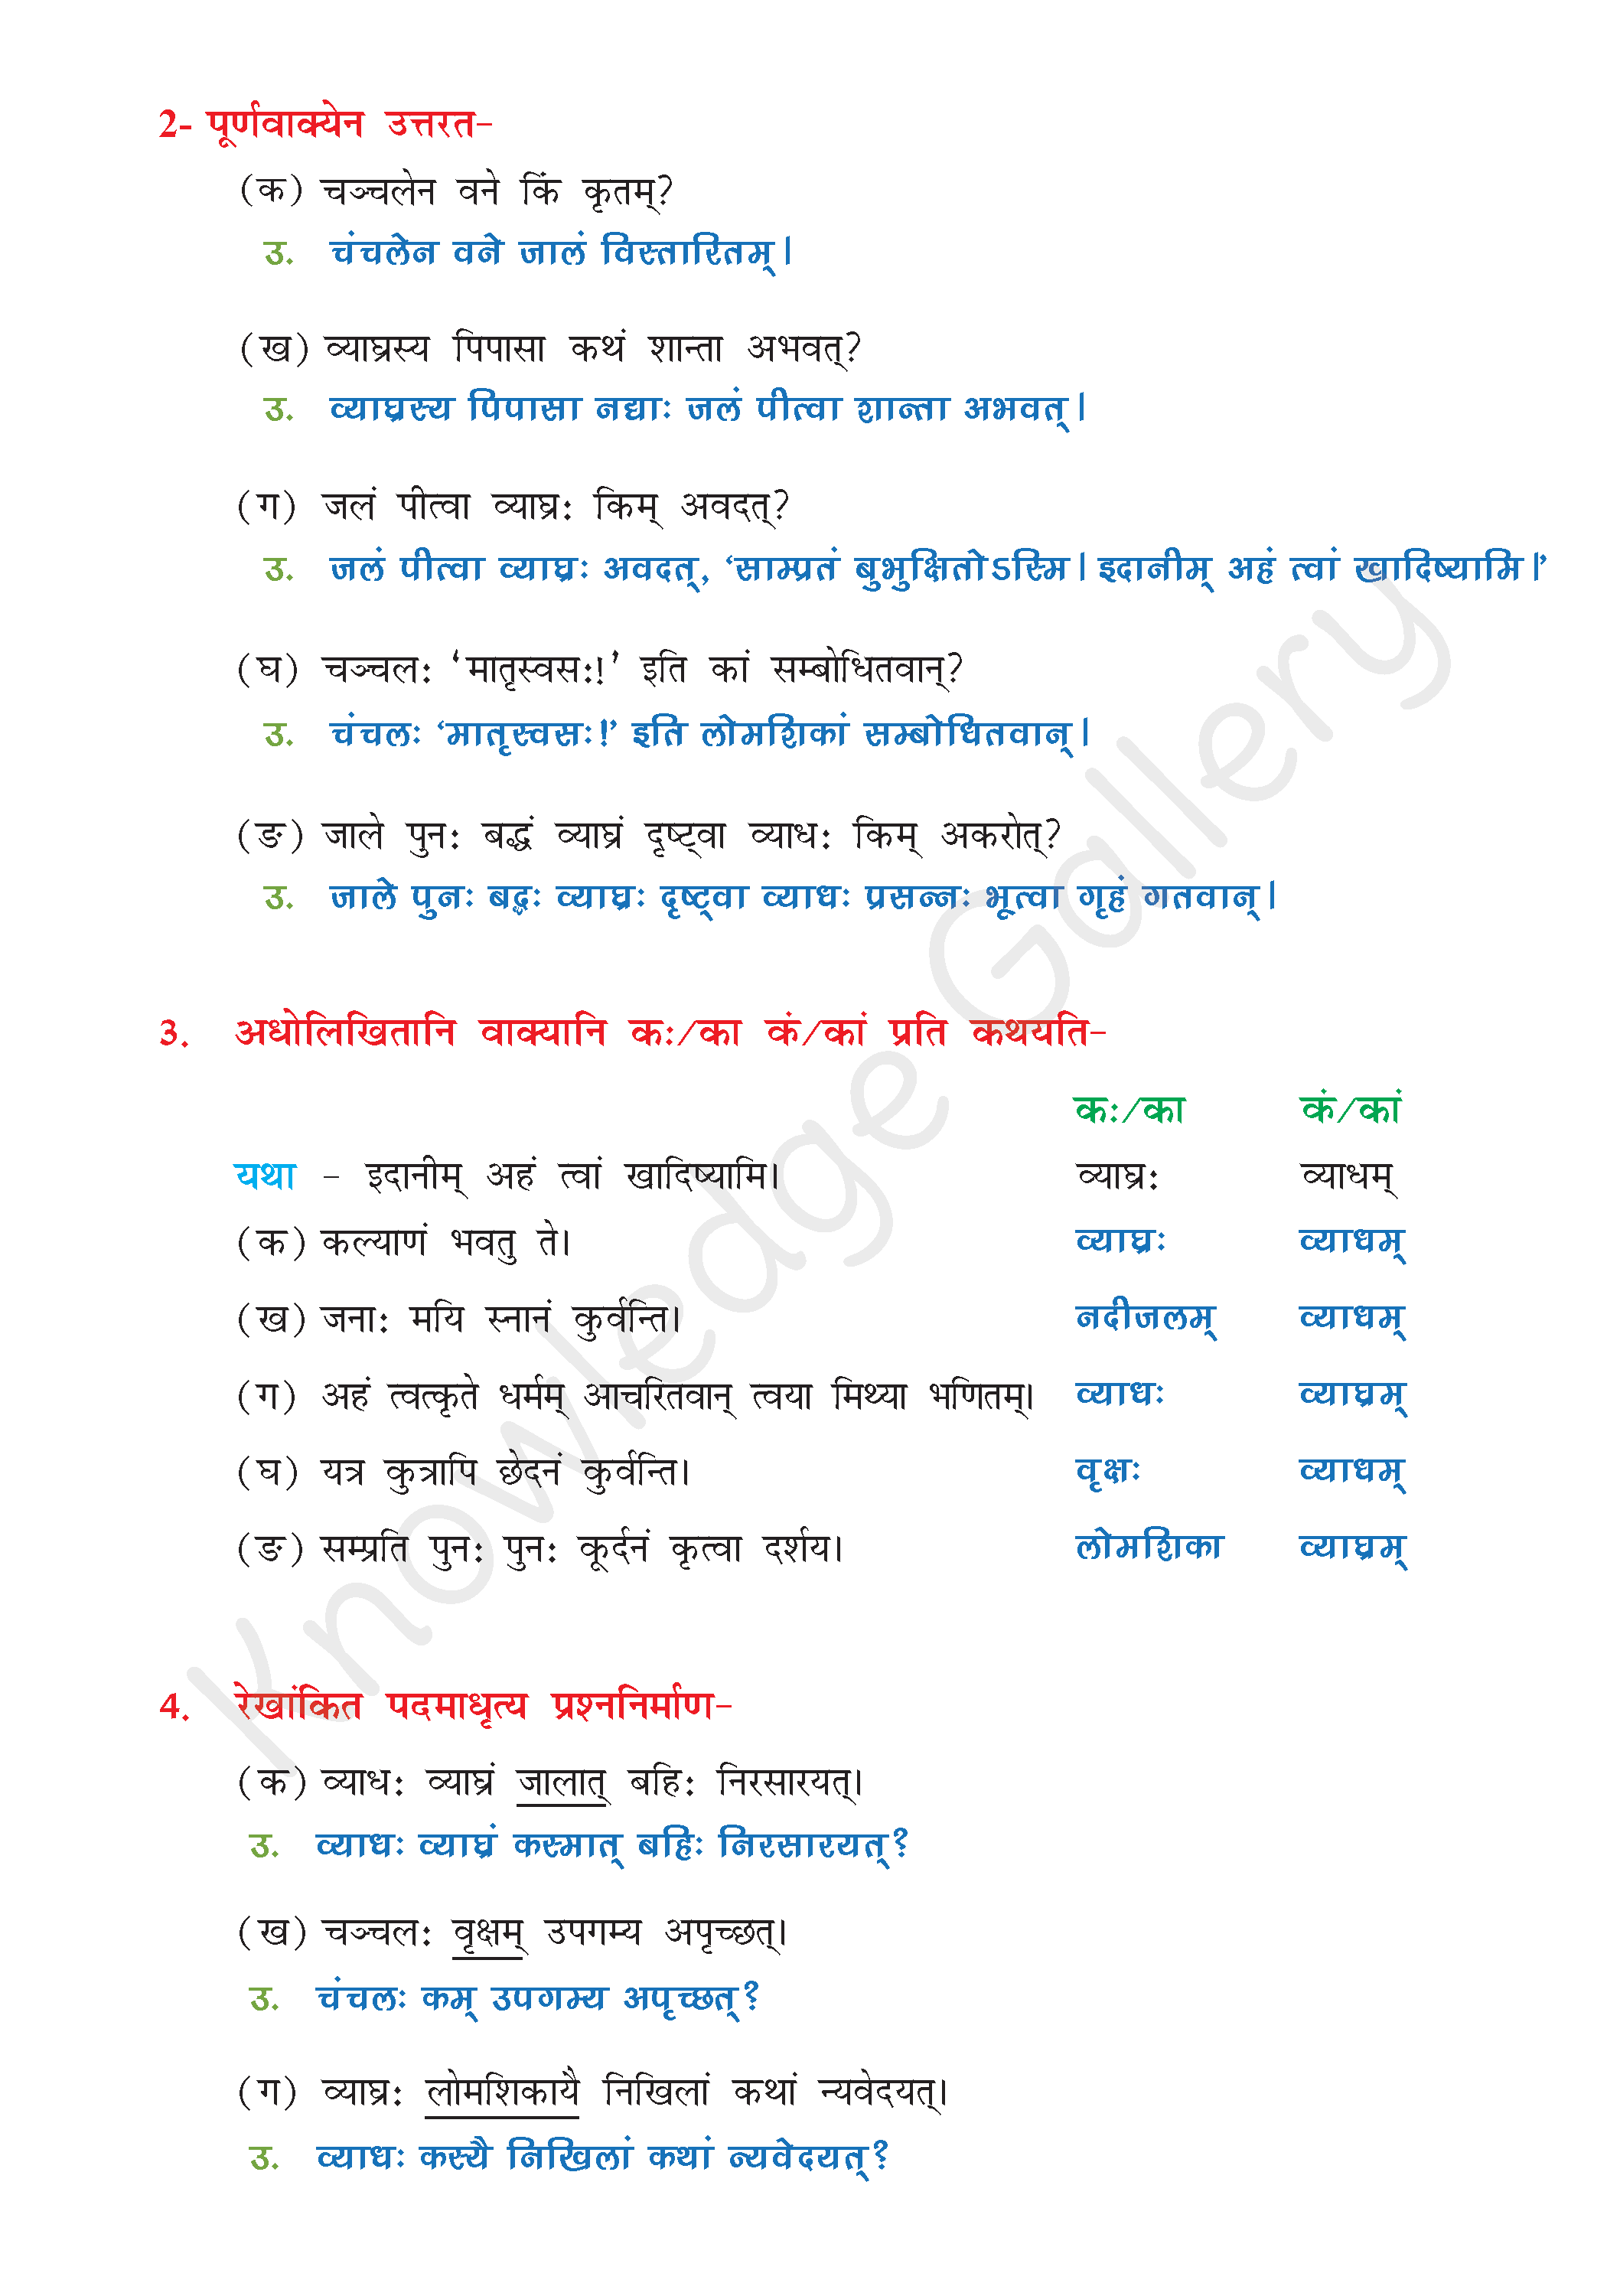 NCERT Solution For Class 8 Sanskrit Chapter 5 part 5